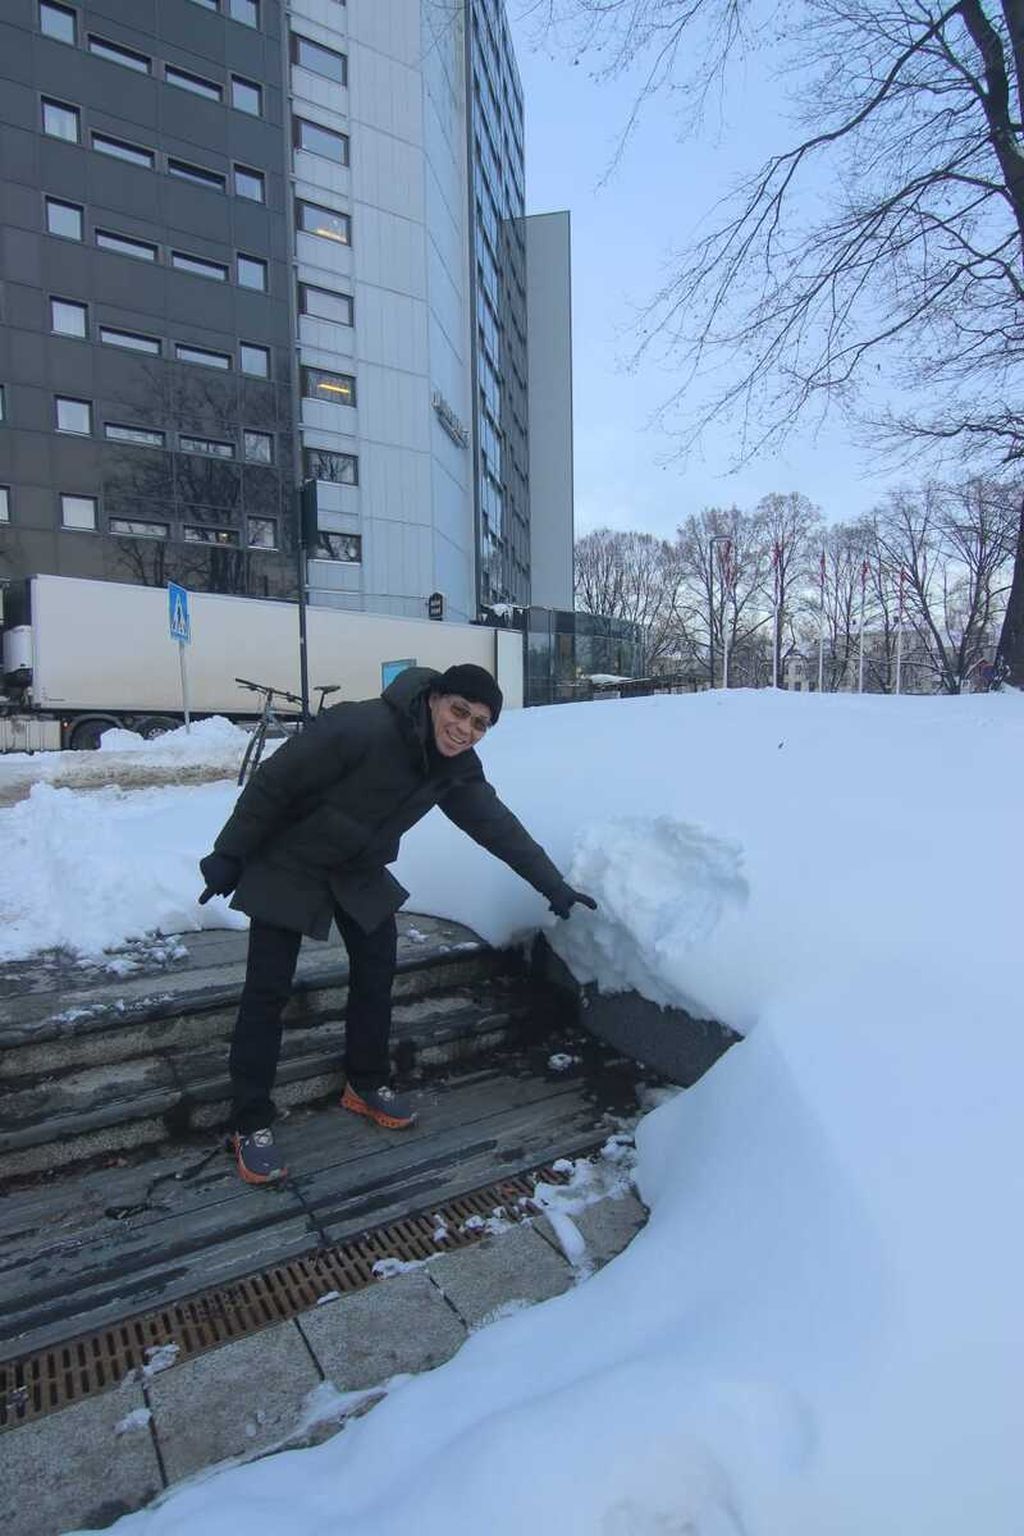 Royke Lumowa menunjukkan ketebalan salju di kota Oslo, Norwegia.